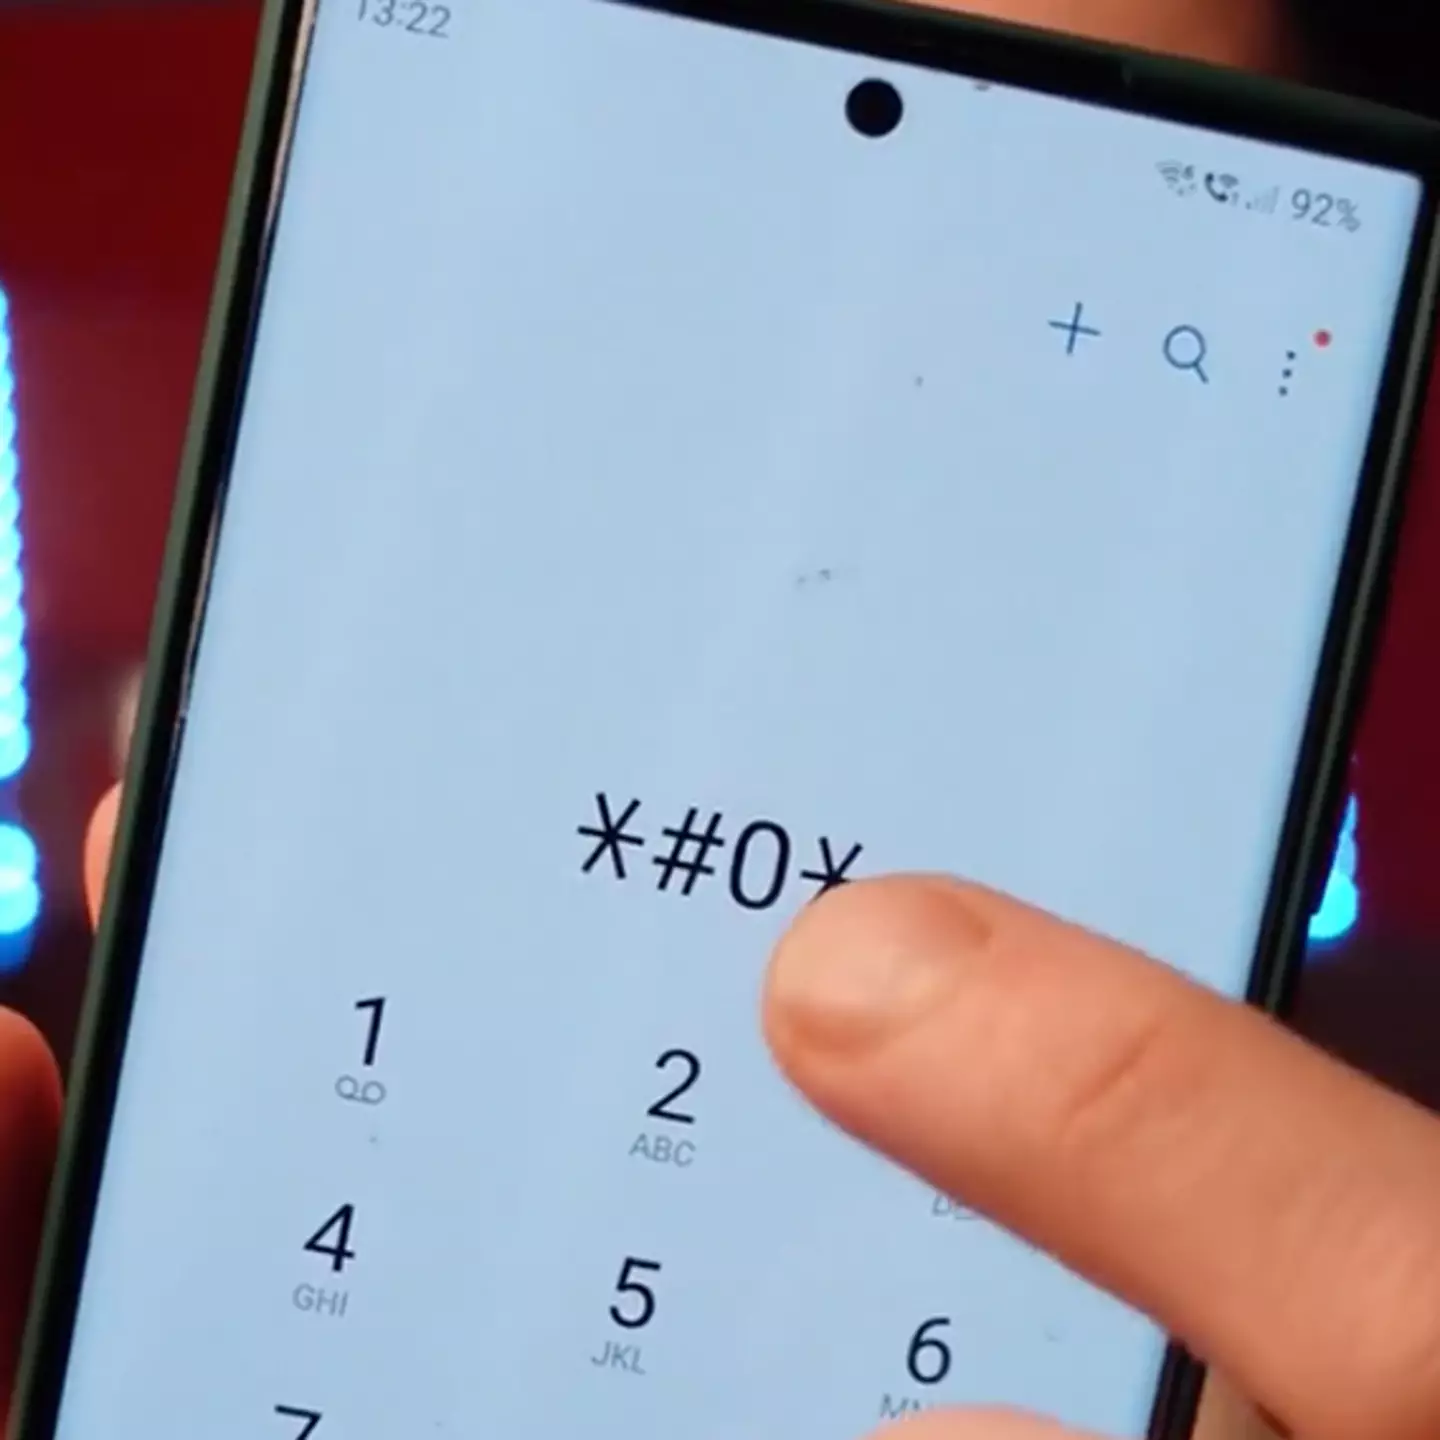 Tech expert shares code that unlocks secret feature on Samsung phones